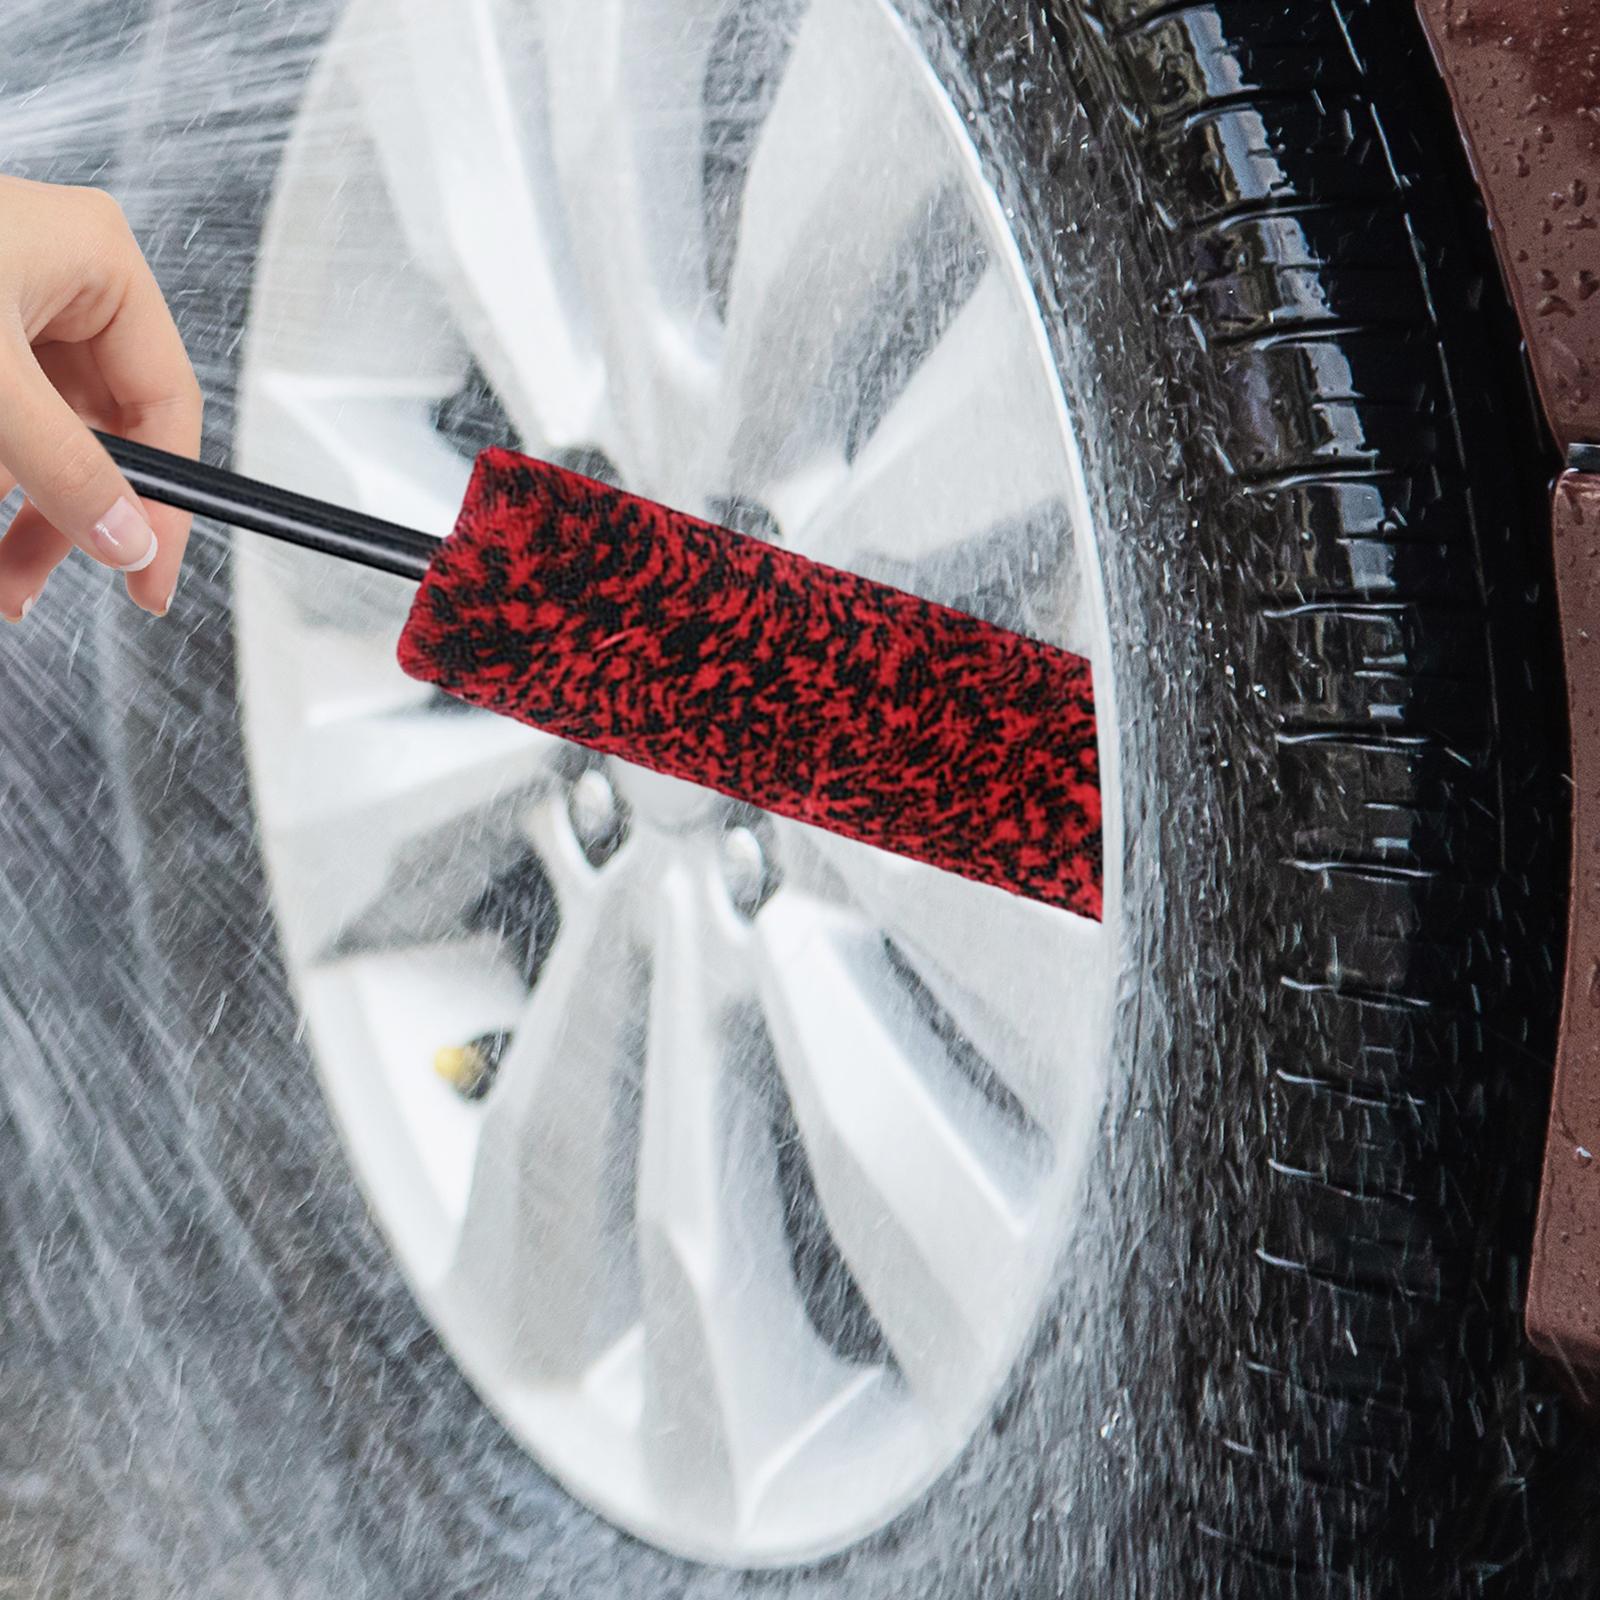 Auto Wheel Detailing Brush Car Cleaning Tools Multipurpose for Rims M